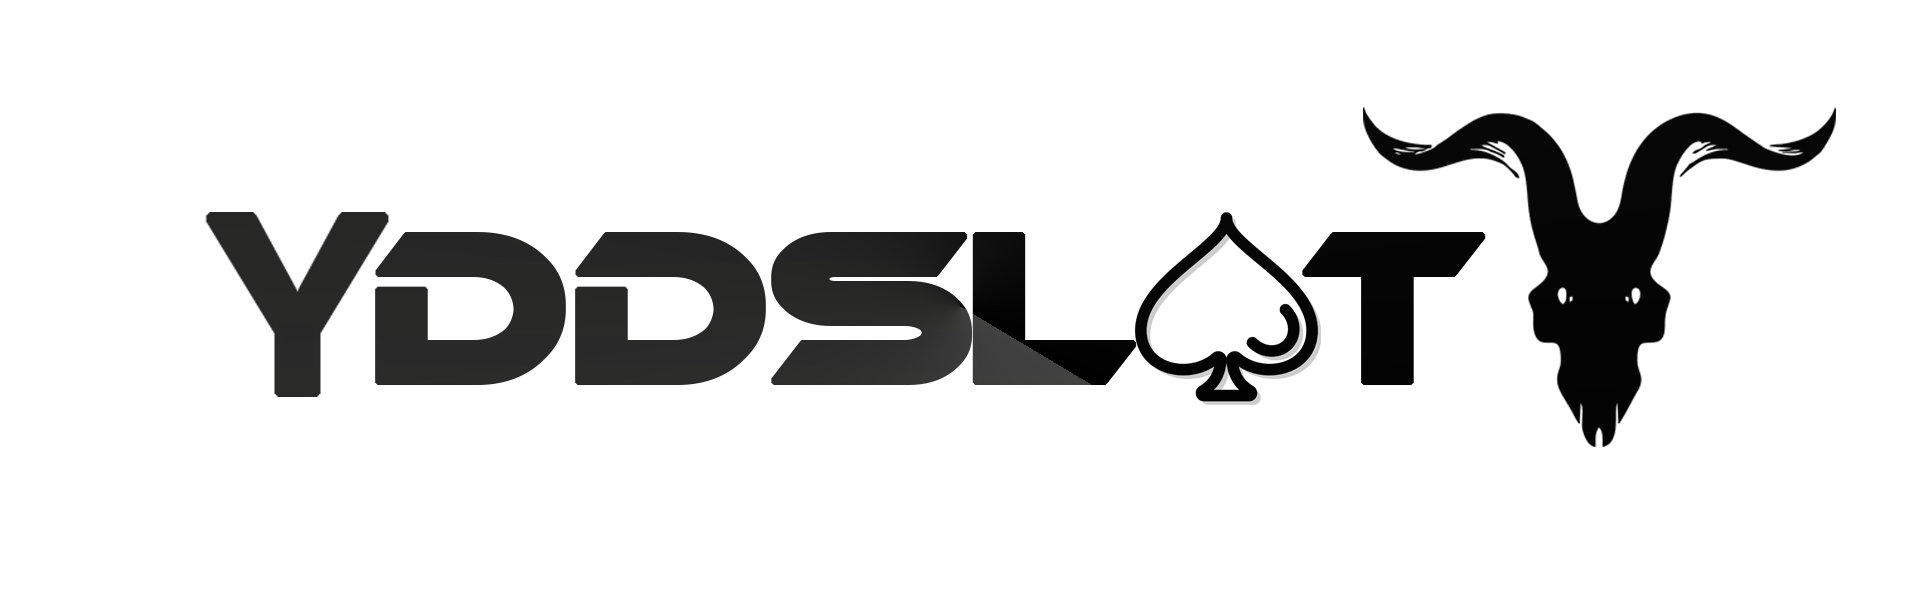 logo YDDSLOT Mobile